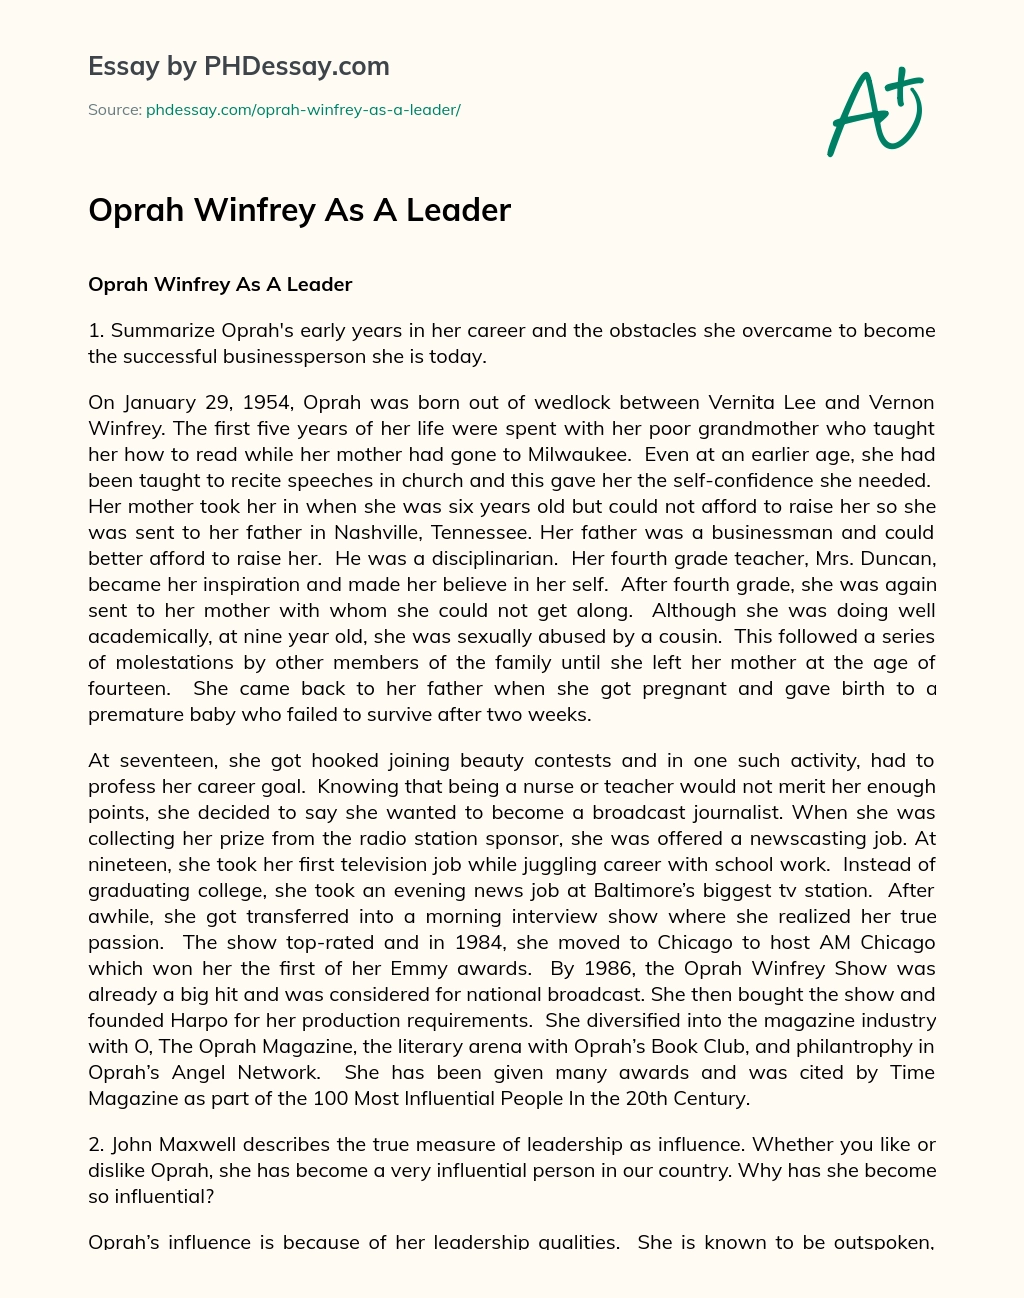 Oprah Winfrey As A Leader essay